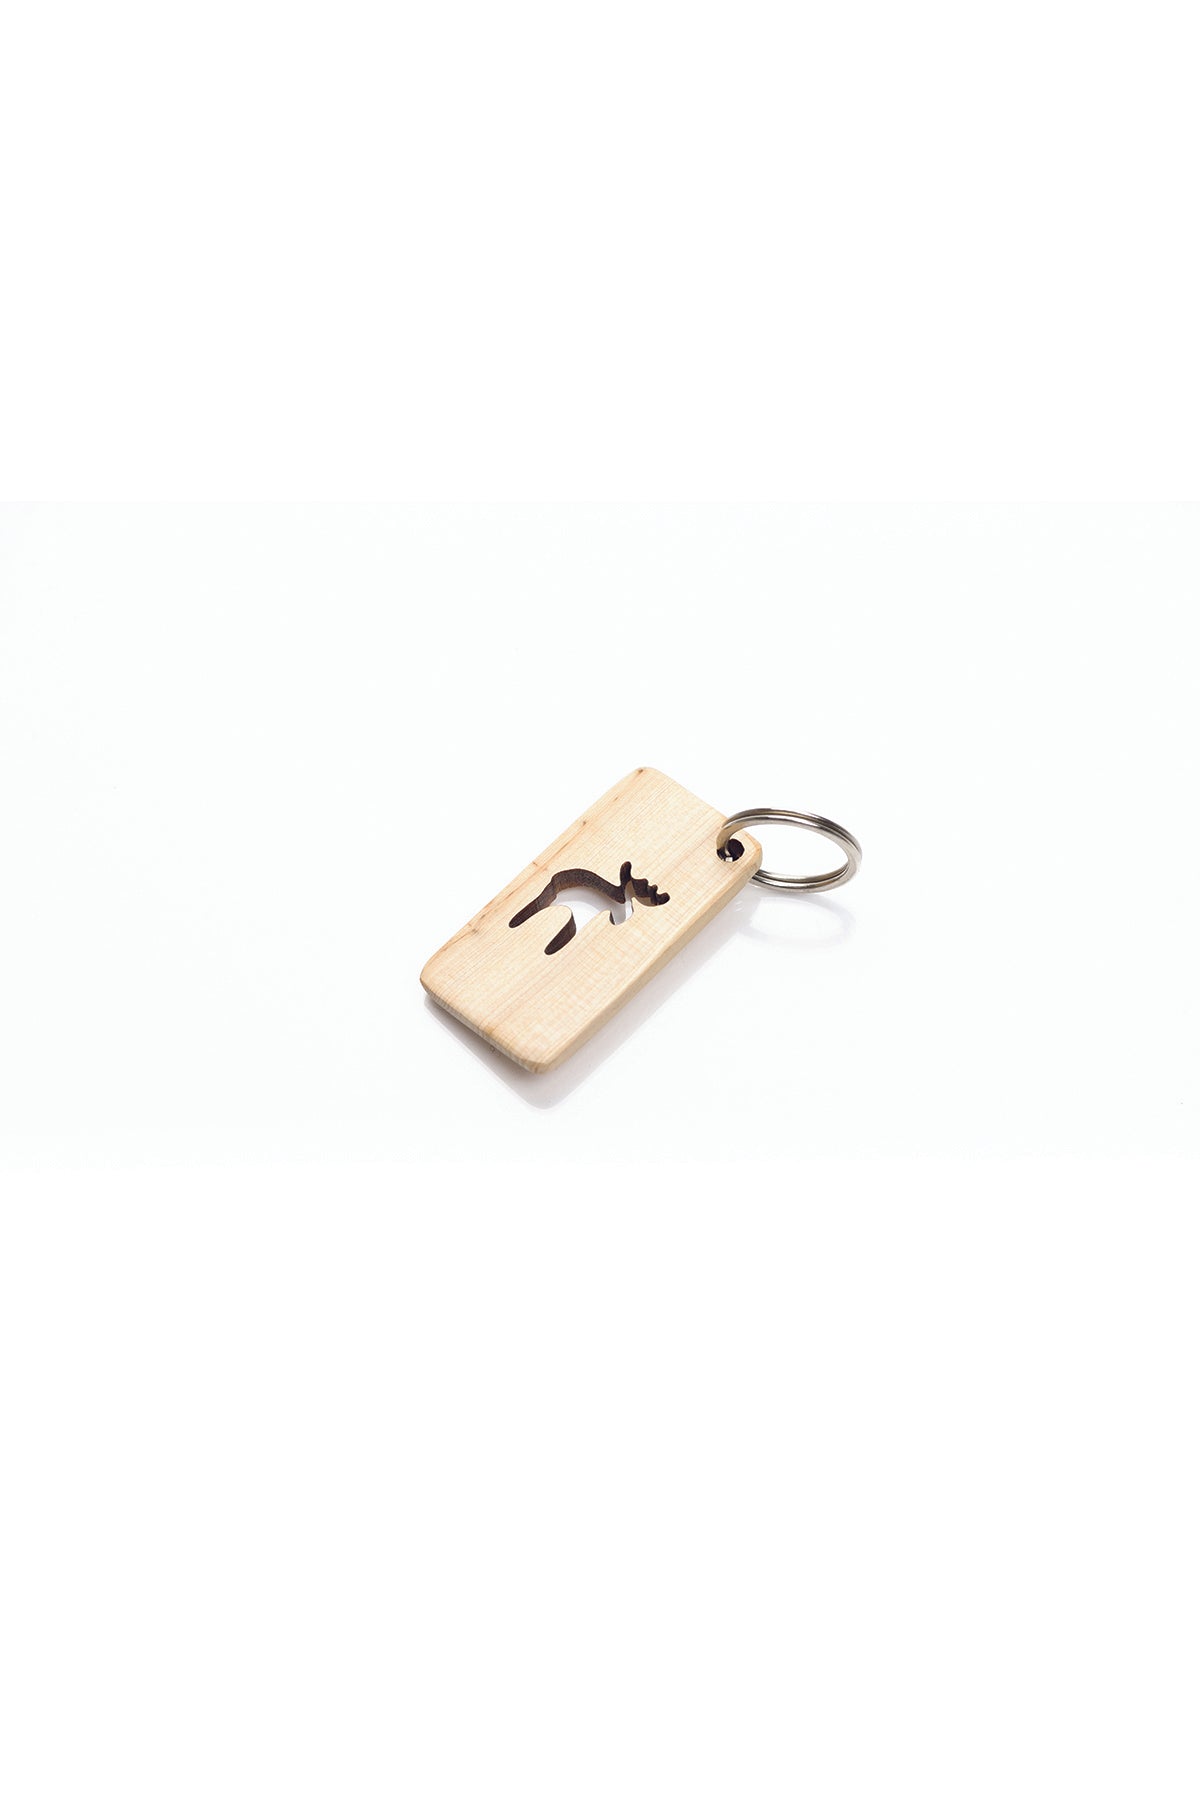 Schlüsselanhänger Elch | 3 x 5,5 cm